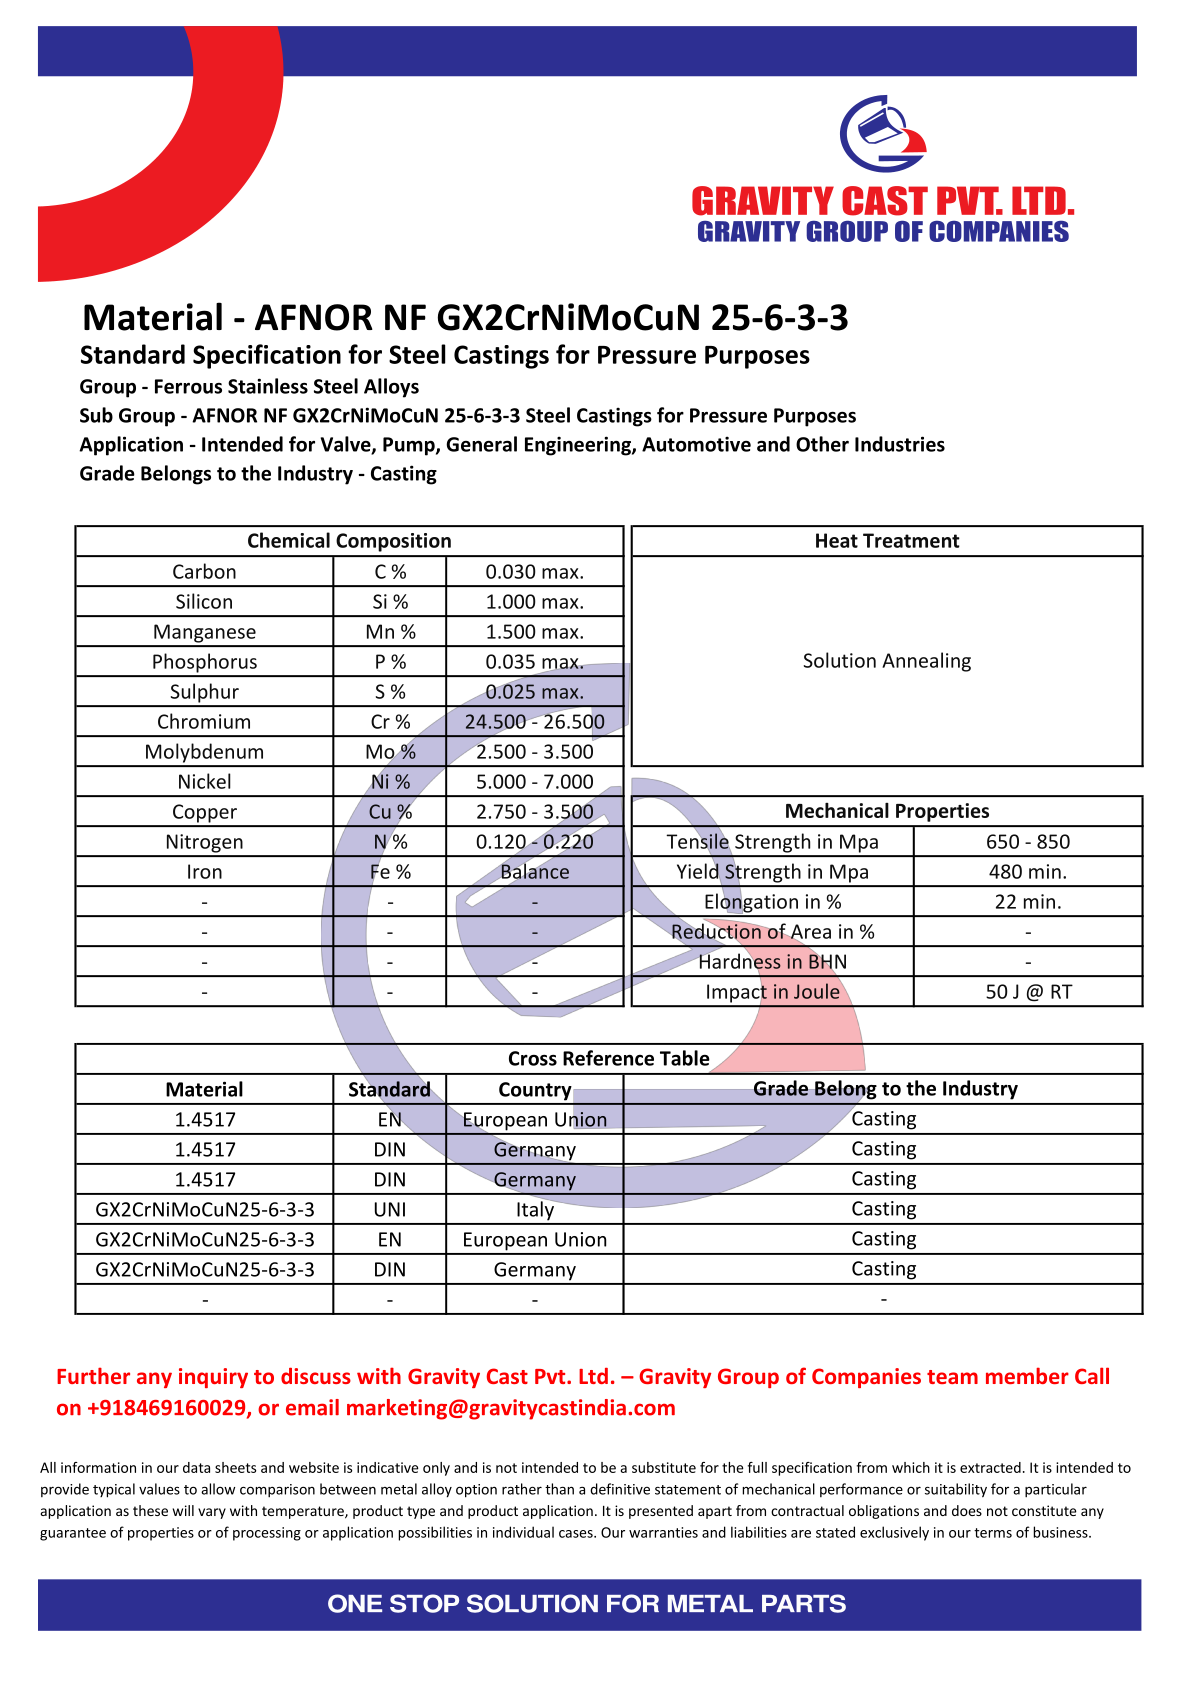 AFNOR NF GX2CrNiMoCuN 25-6-3-3.pdf